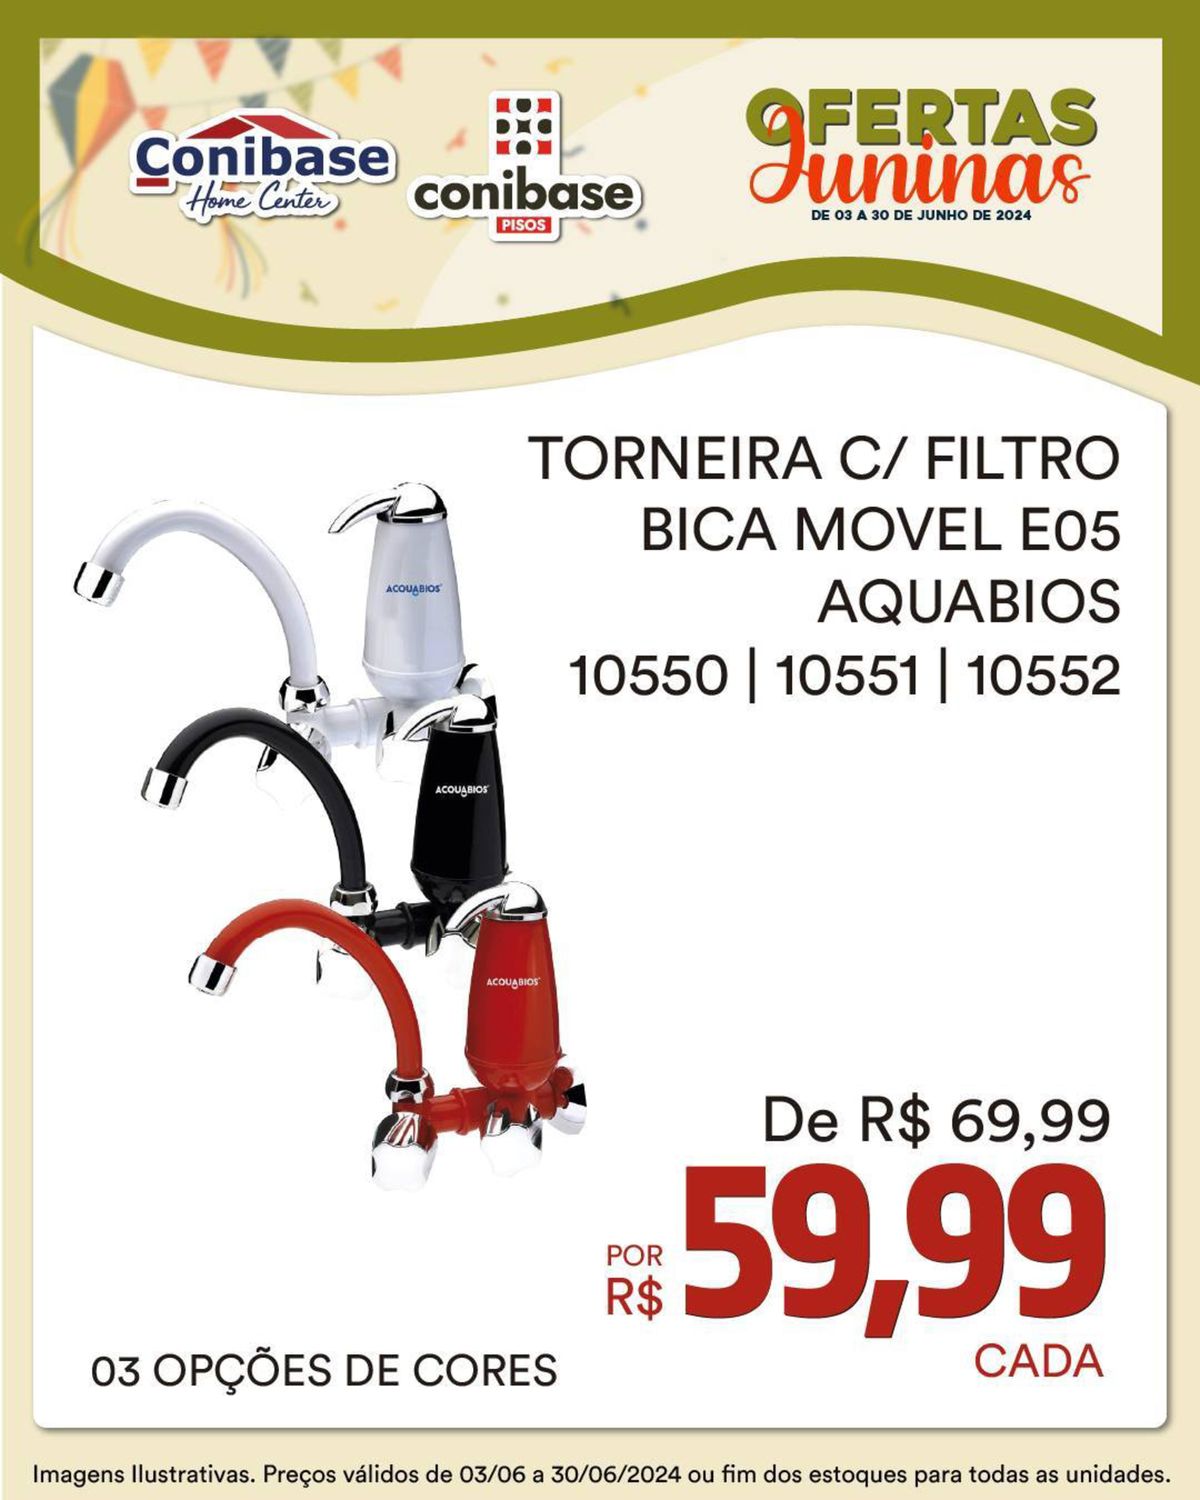 TORNEIRA C/ FILTRO AQUABIOS - De R$ 69,99 por R$ 29,99